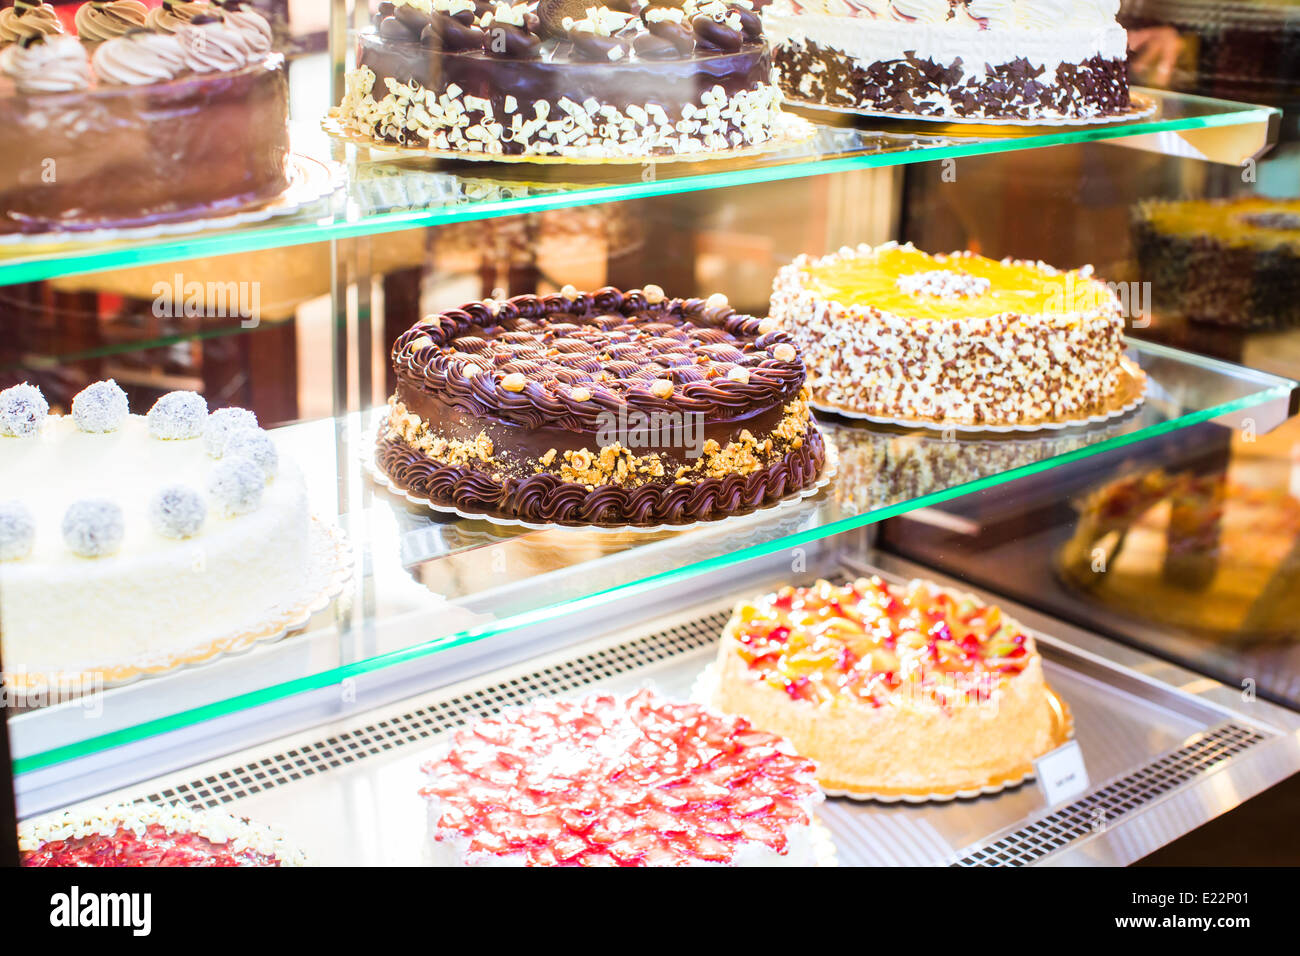 Pâtisserie écran de verre avec sélection de la crème ou un gâteau aux fruits Banque D'Images